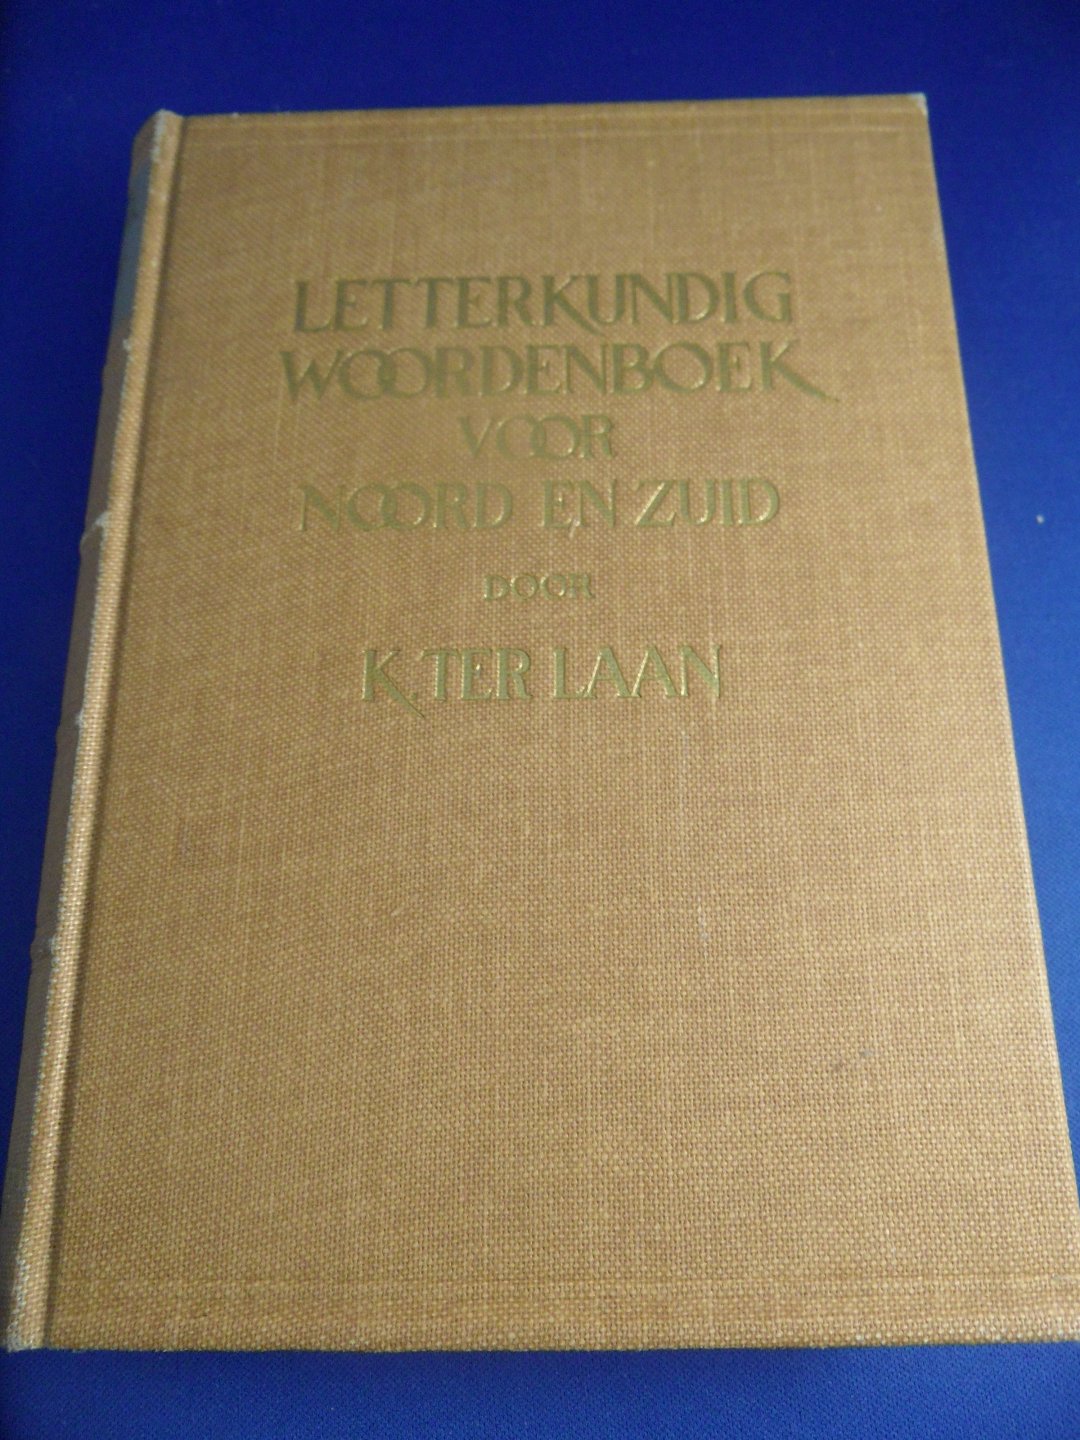 Laan ter K. - Letterkundig woordenboek voor Noord en Zuid